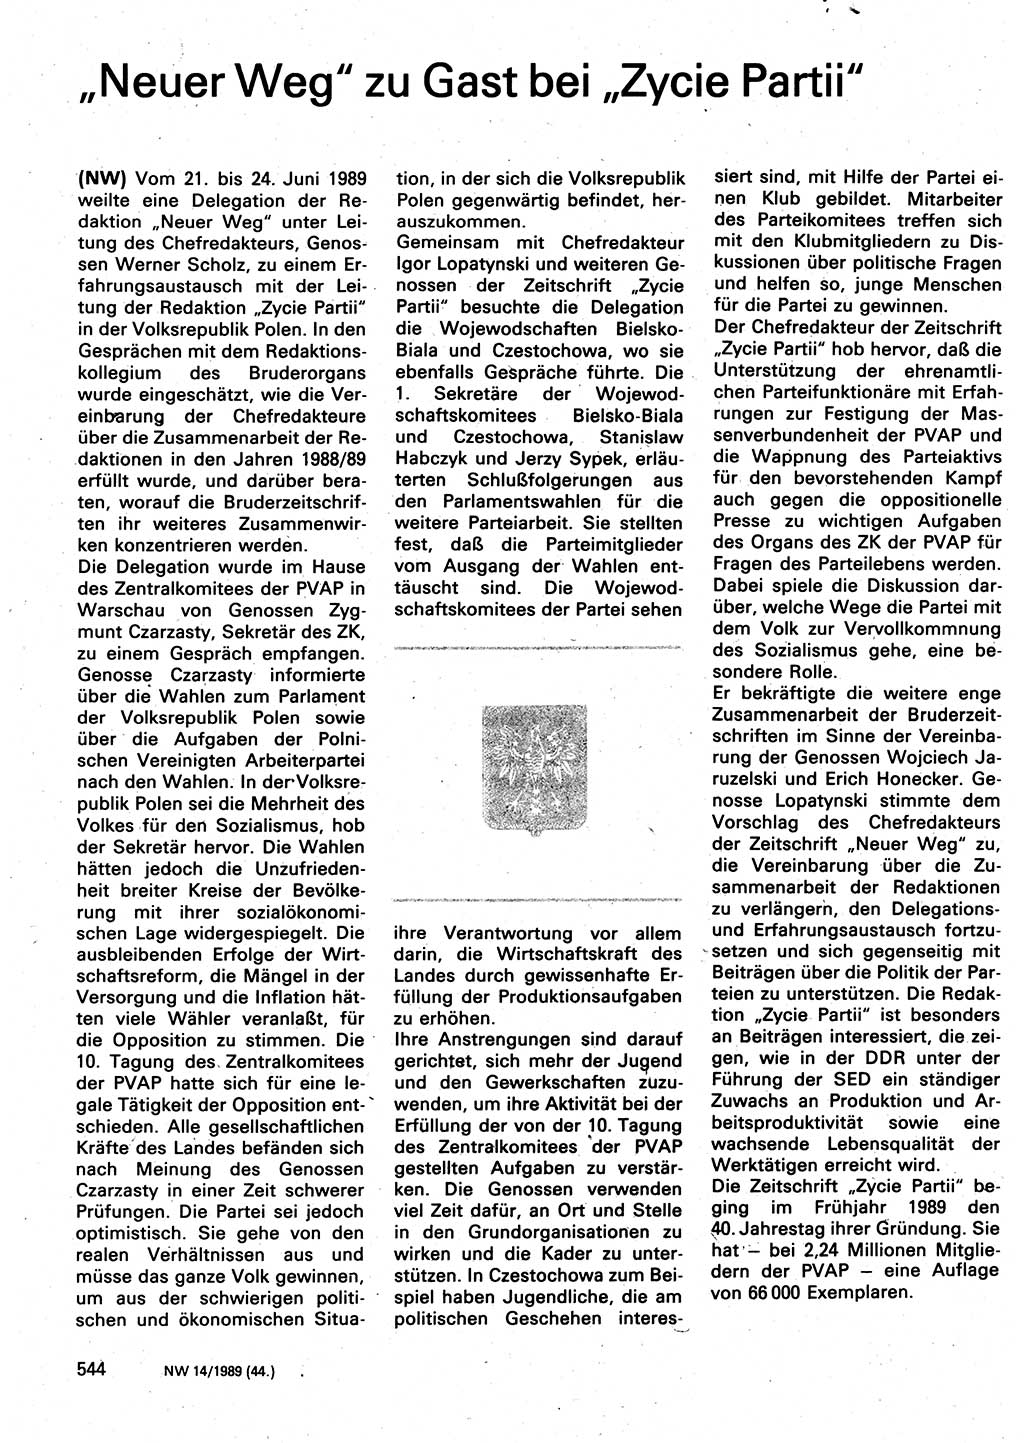 Neuer Weg (NW), Organ des Zentralkomitees (ZK) der SED (Sozialistische Einheitspartei Deutschlands) für Fragen des Parteilebens, 44. Jahrgang [Deutsche Demokratische Republik (DDR)] 1989, Seite 544 (NW ZK SED DDR 1989, S. 544)